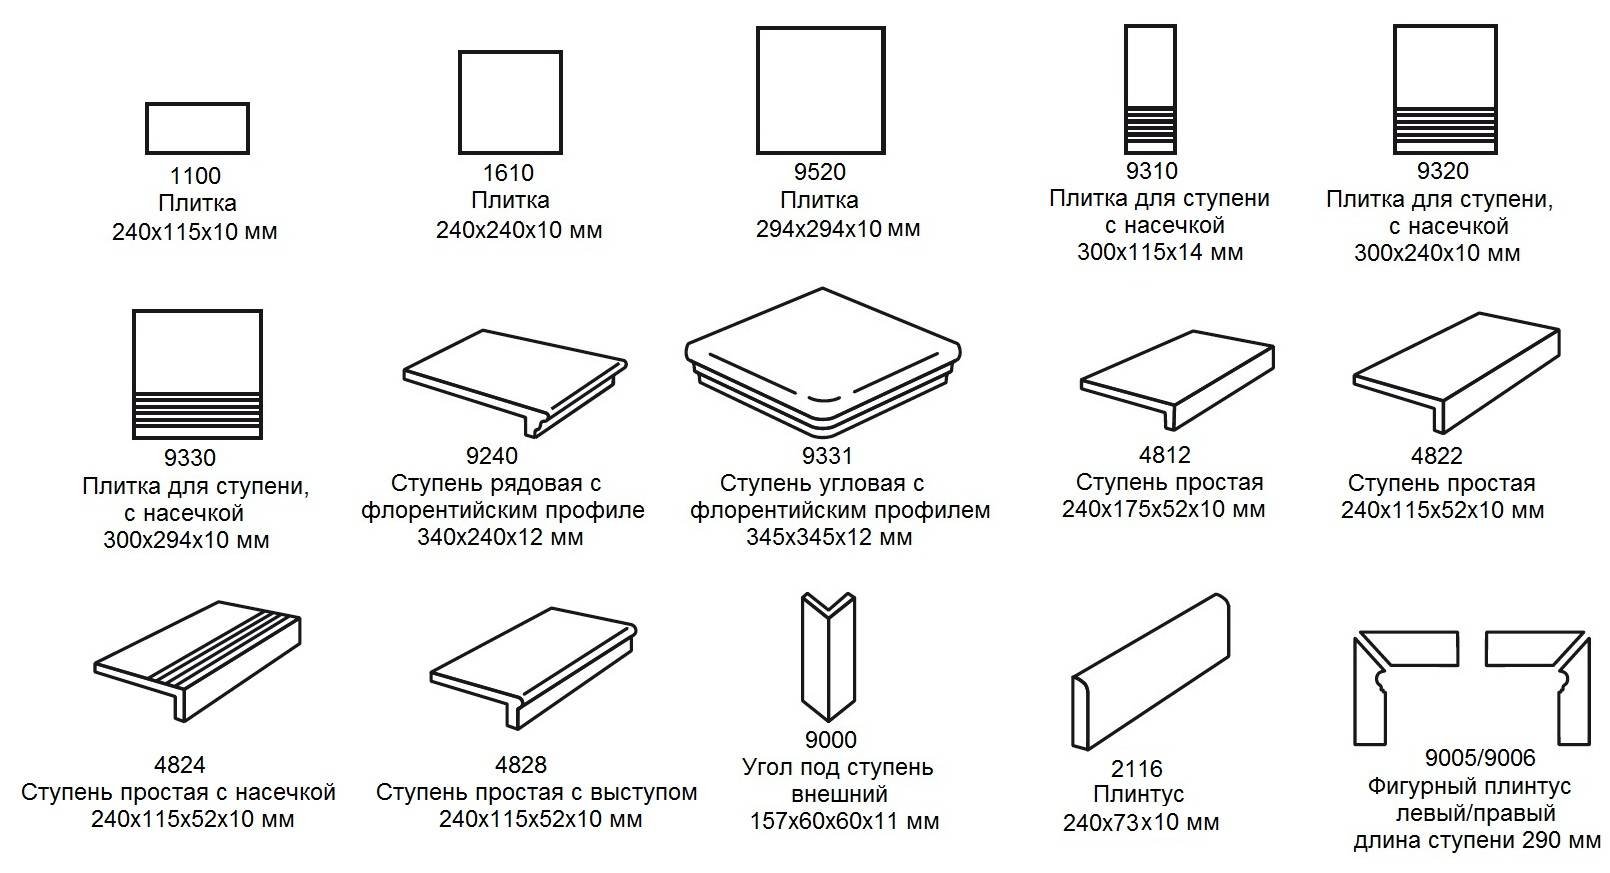 Толщина напольной плитки: как определить размер покрытия с клеем, какую толщину керамической и кафельной плитки выбрать на пол